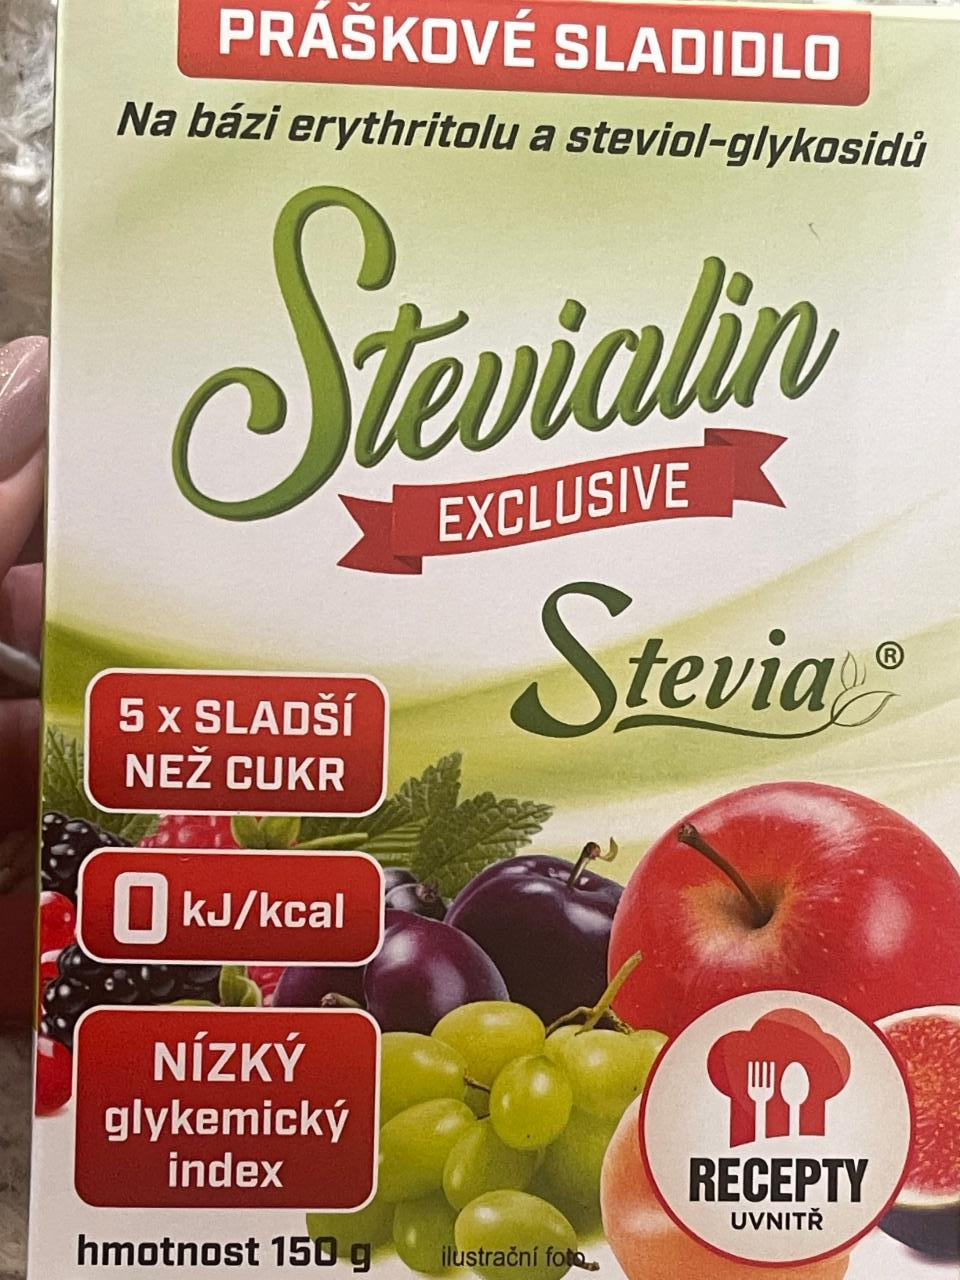 Фото - Stevialin Exclusive práškové sladidlo Stevia